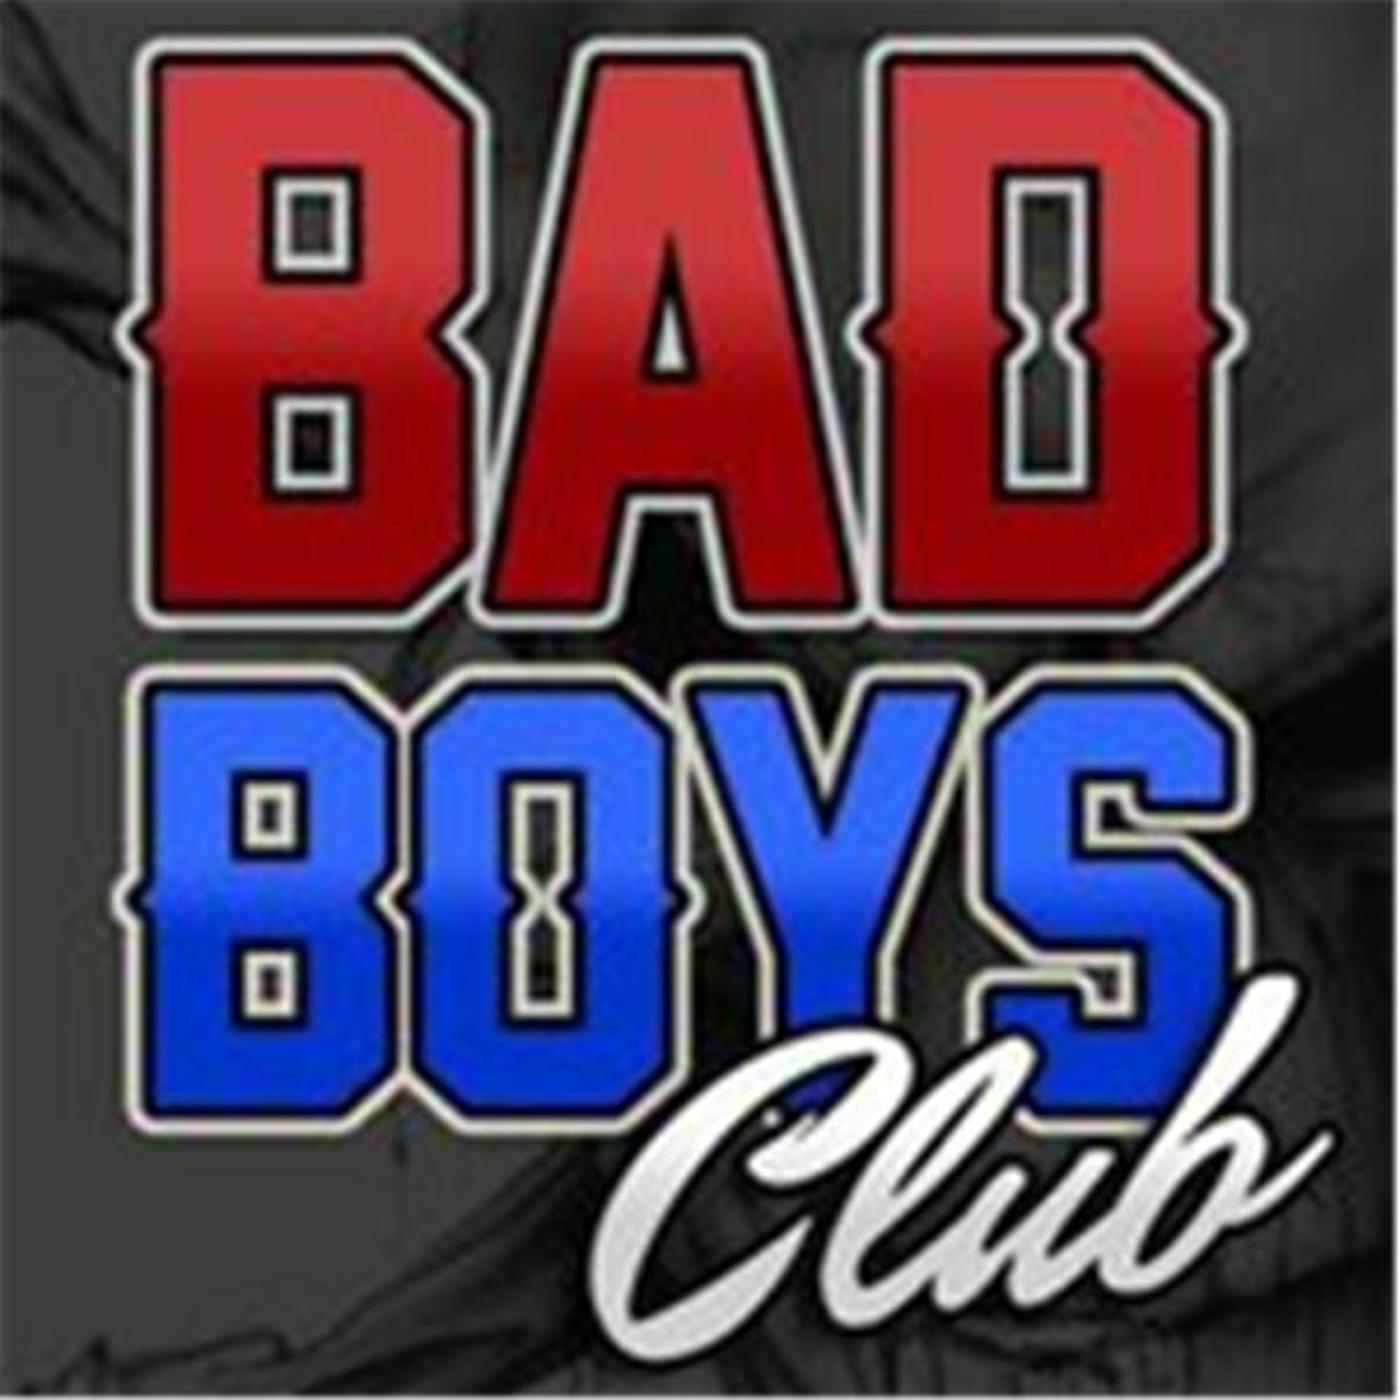 Club bad boyz Freedom Series